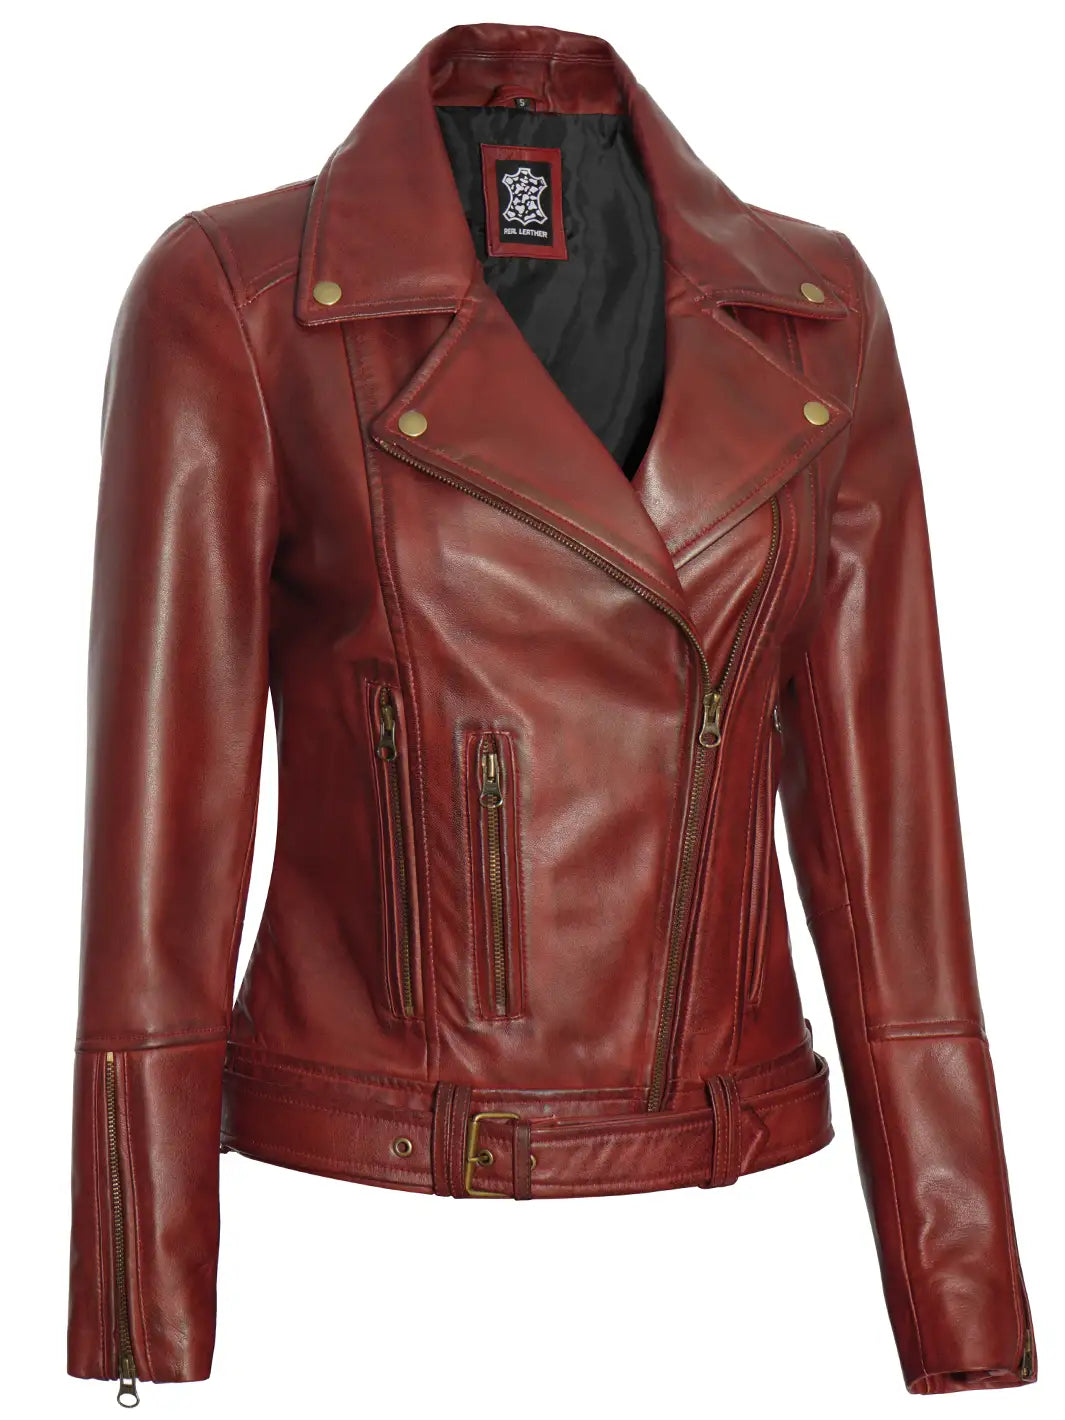 Womens maroon biker leather jacket